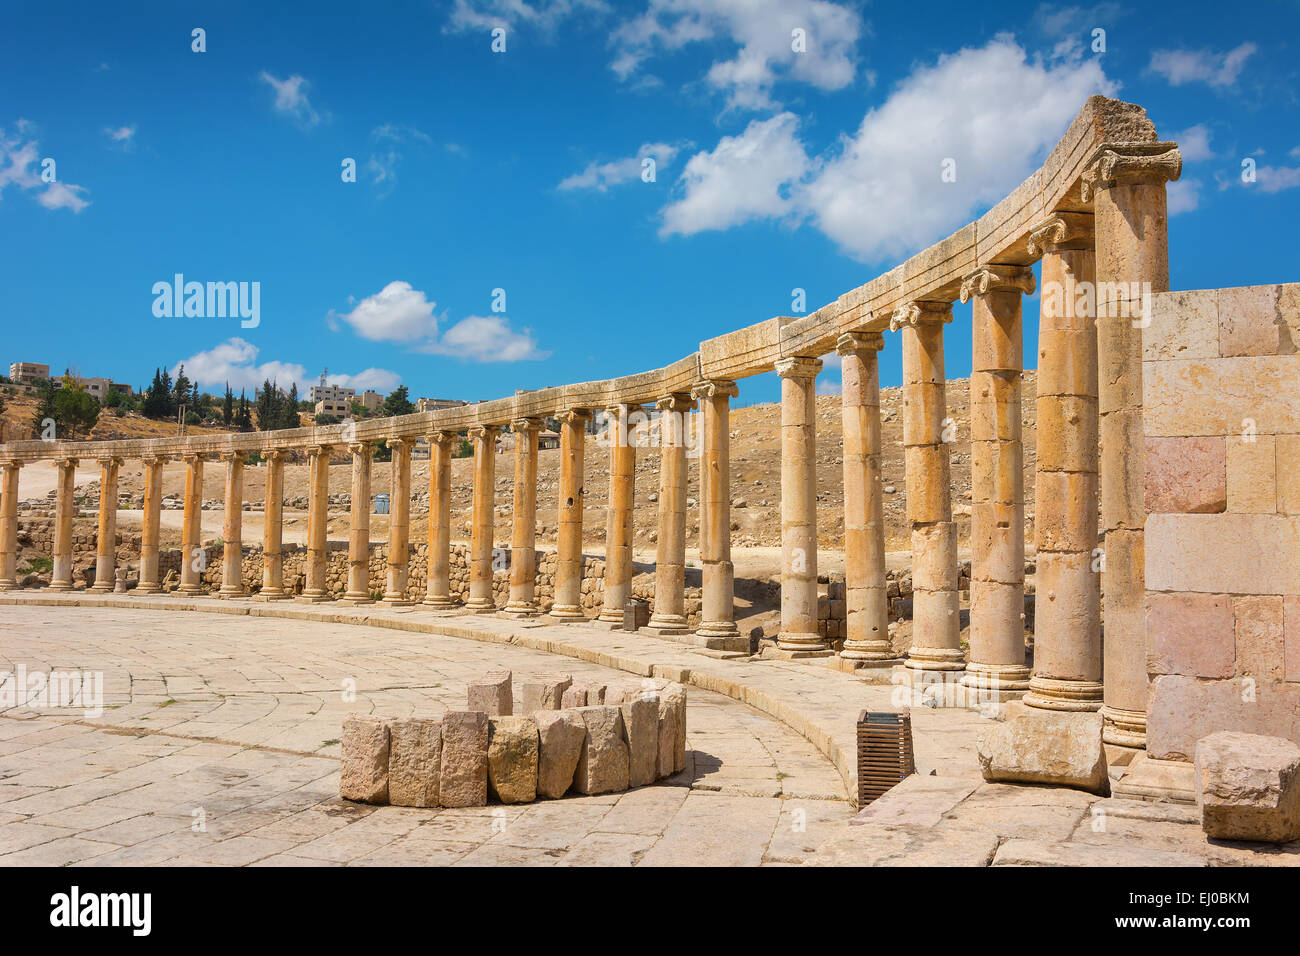 Halbkreis von Spalten bilden einen Platz bei den antiken Ruinen von Jerash in Jordanien. Stockfoto